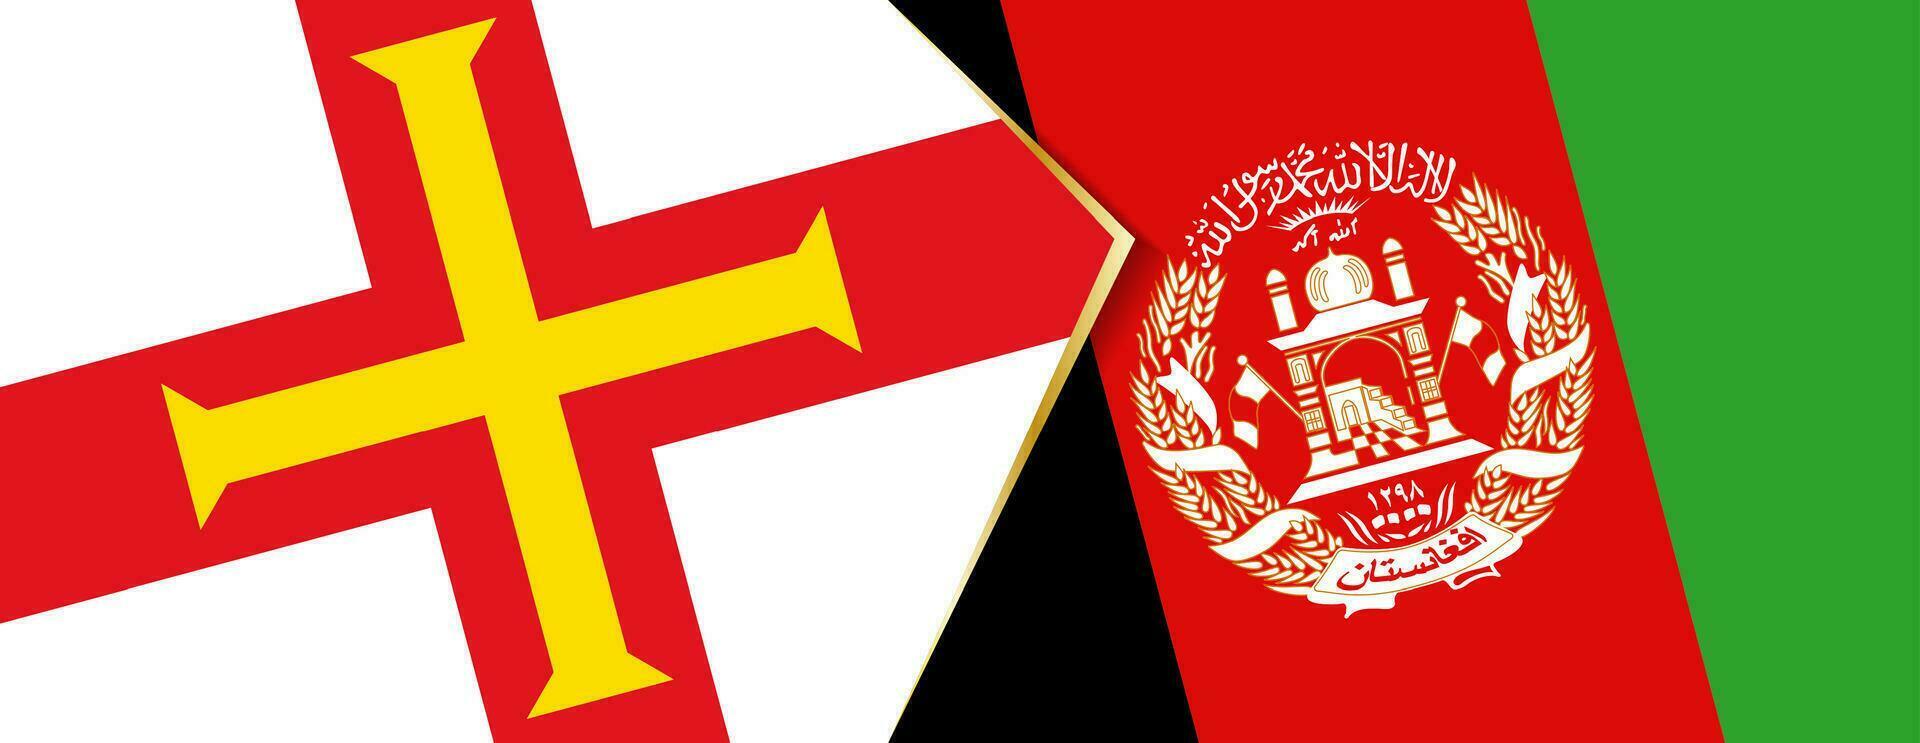 Guernsey und Afghanistan Flaggen, zwei Vektor Flaggen.